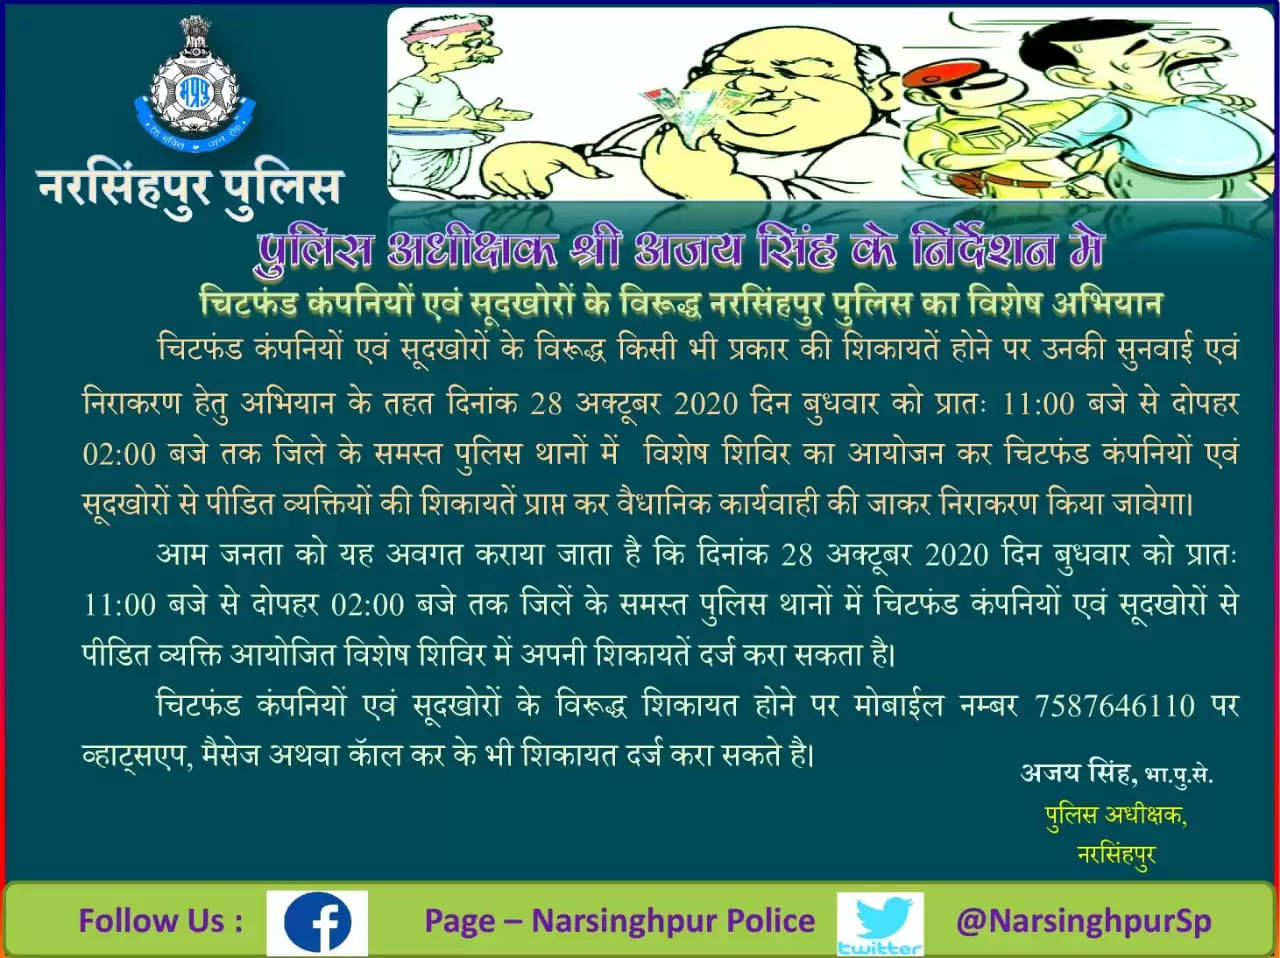 नरसिंहपुर पुलिस अधीक्षक के निर्देश मे चिटफंड कंपनियों एवं सूदखोरों के विरूद्ध पुलिस का विशेष अभियान